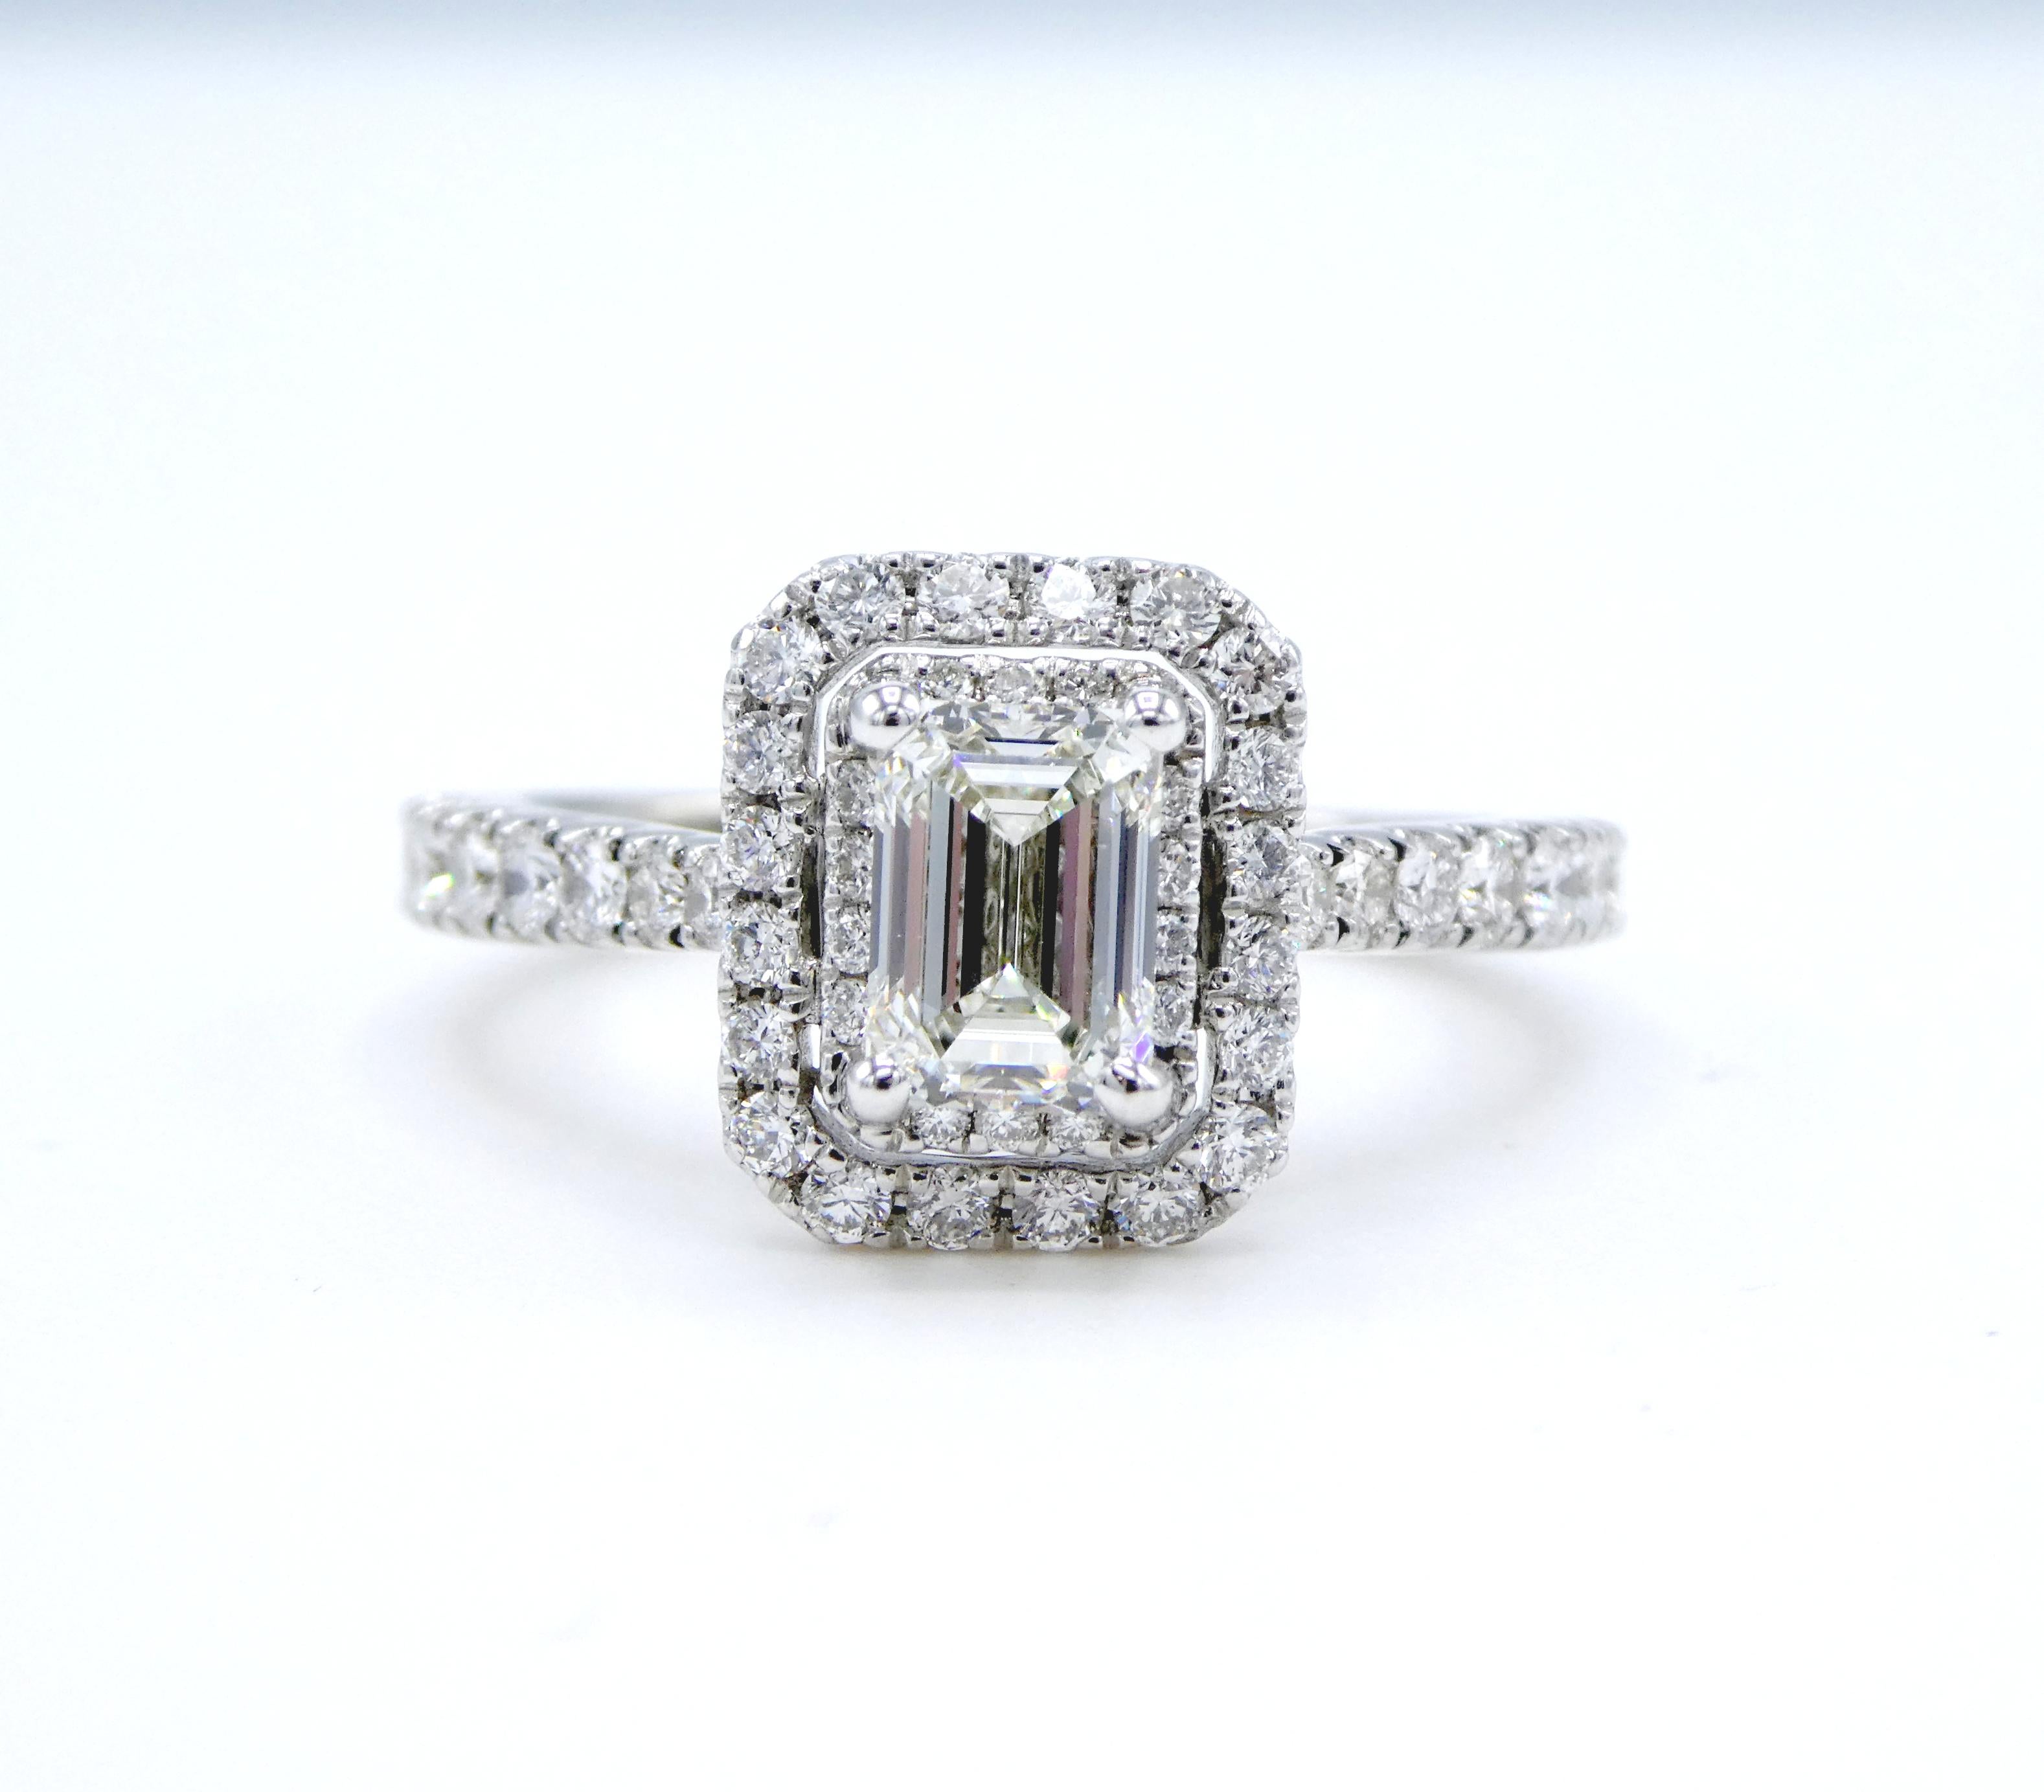 vera wang emerald cut engagement ring